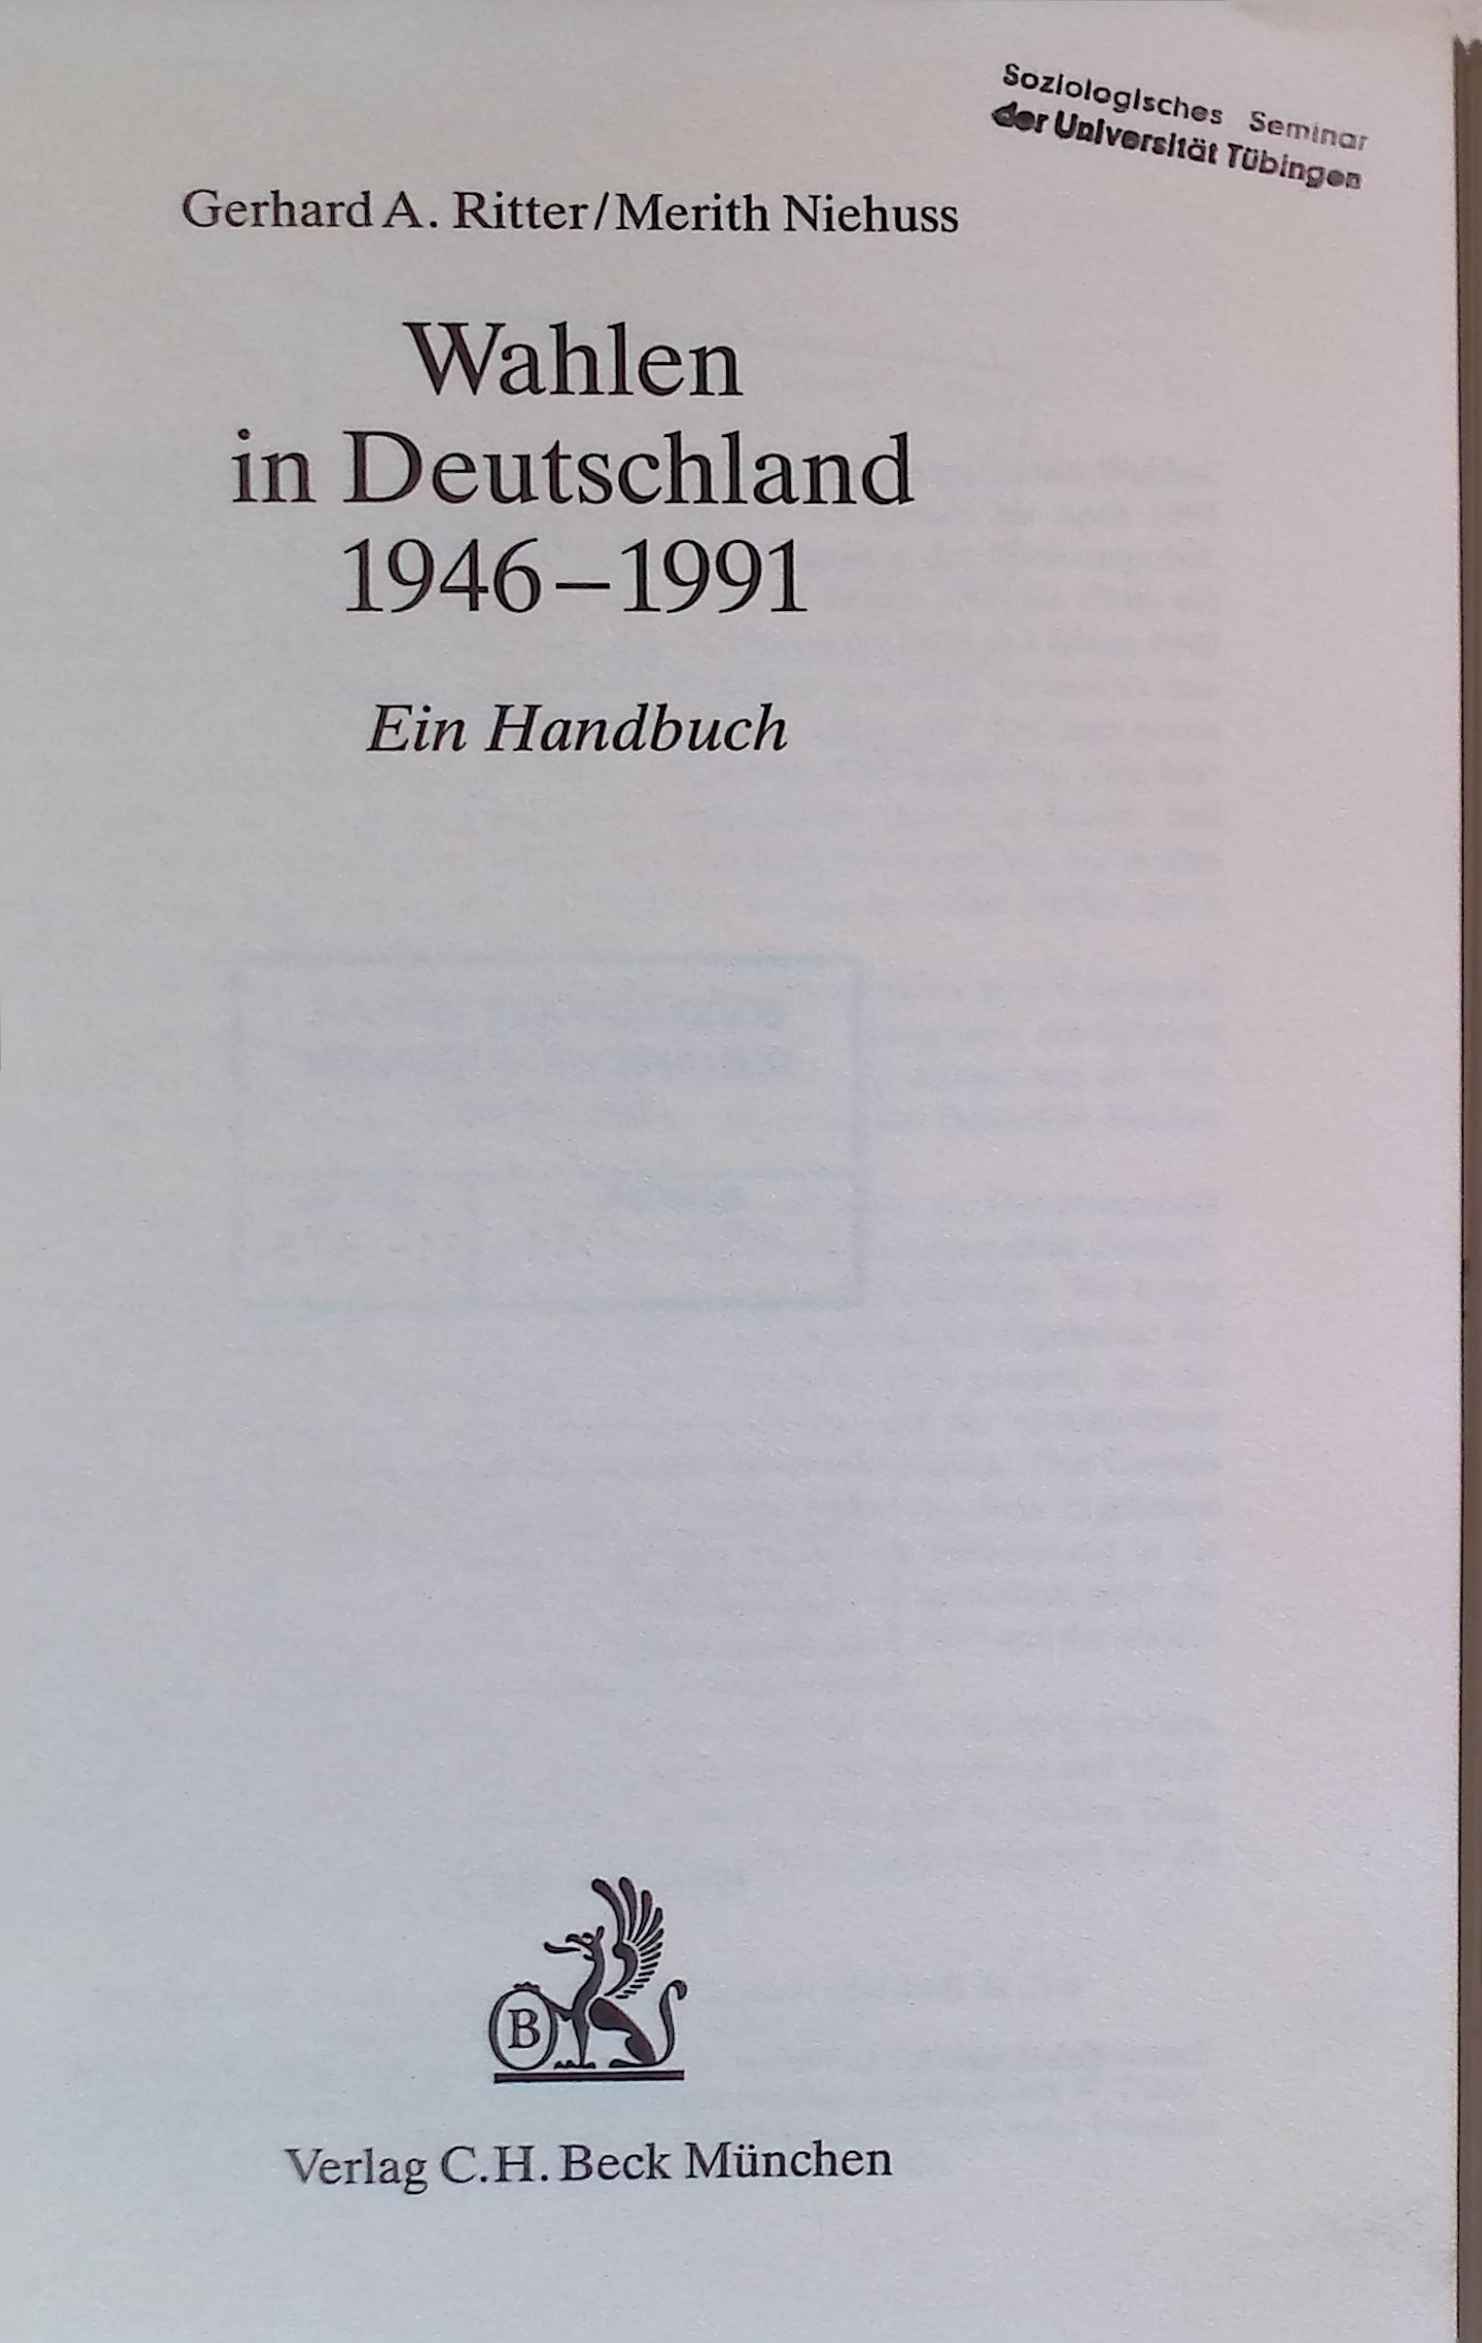 Wahlen in Deutschland 1946 - 1991 : ein Handbuch. - Ritter, Gerhard A. und Merith Niehuss